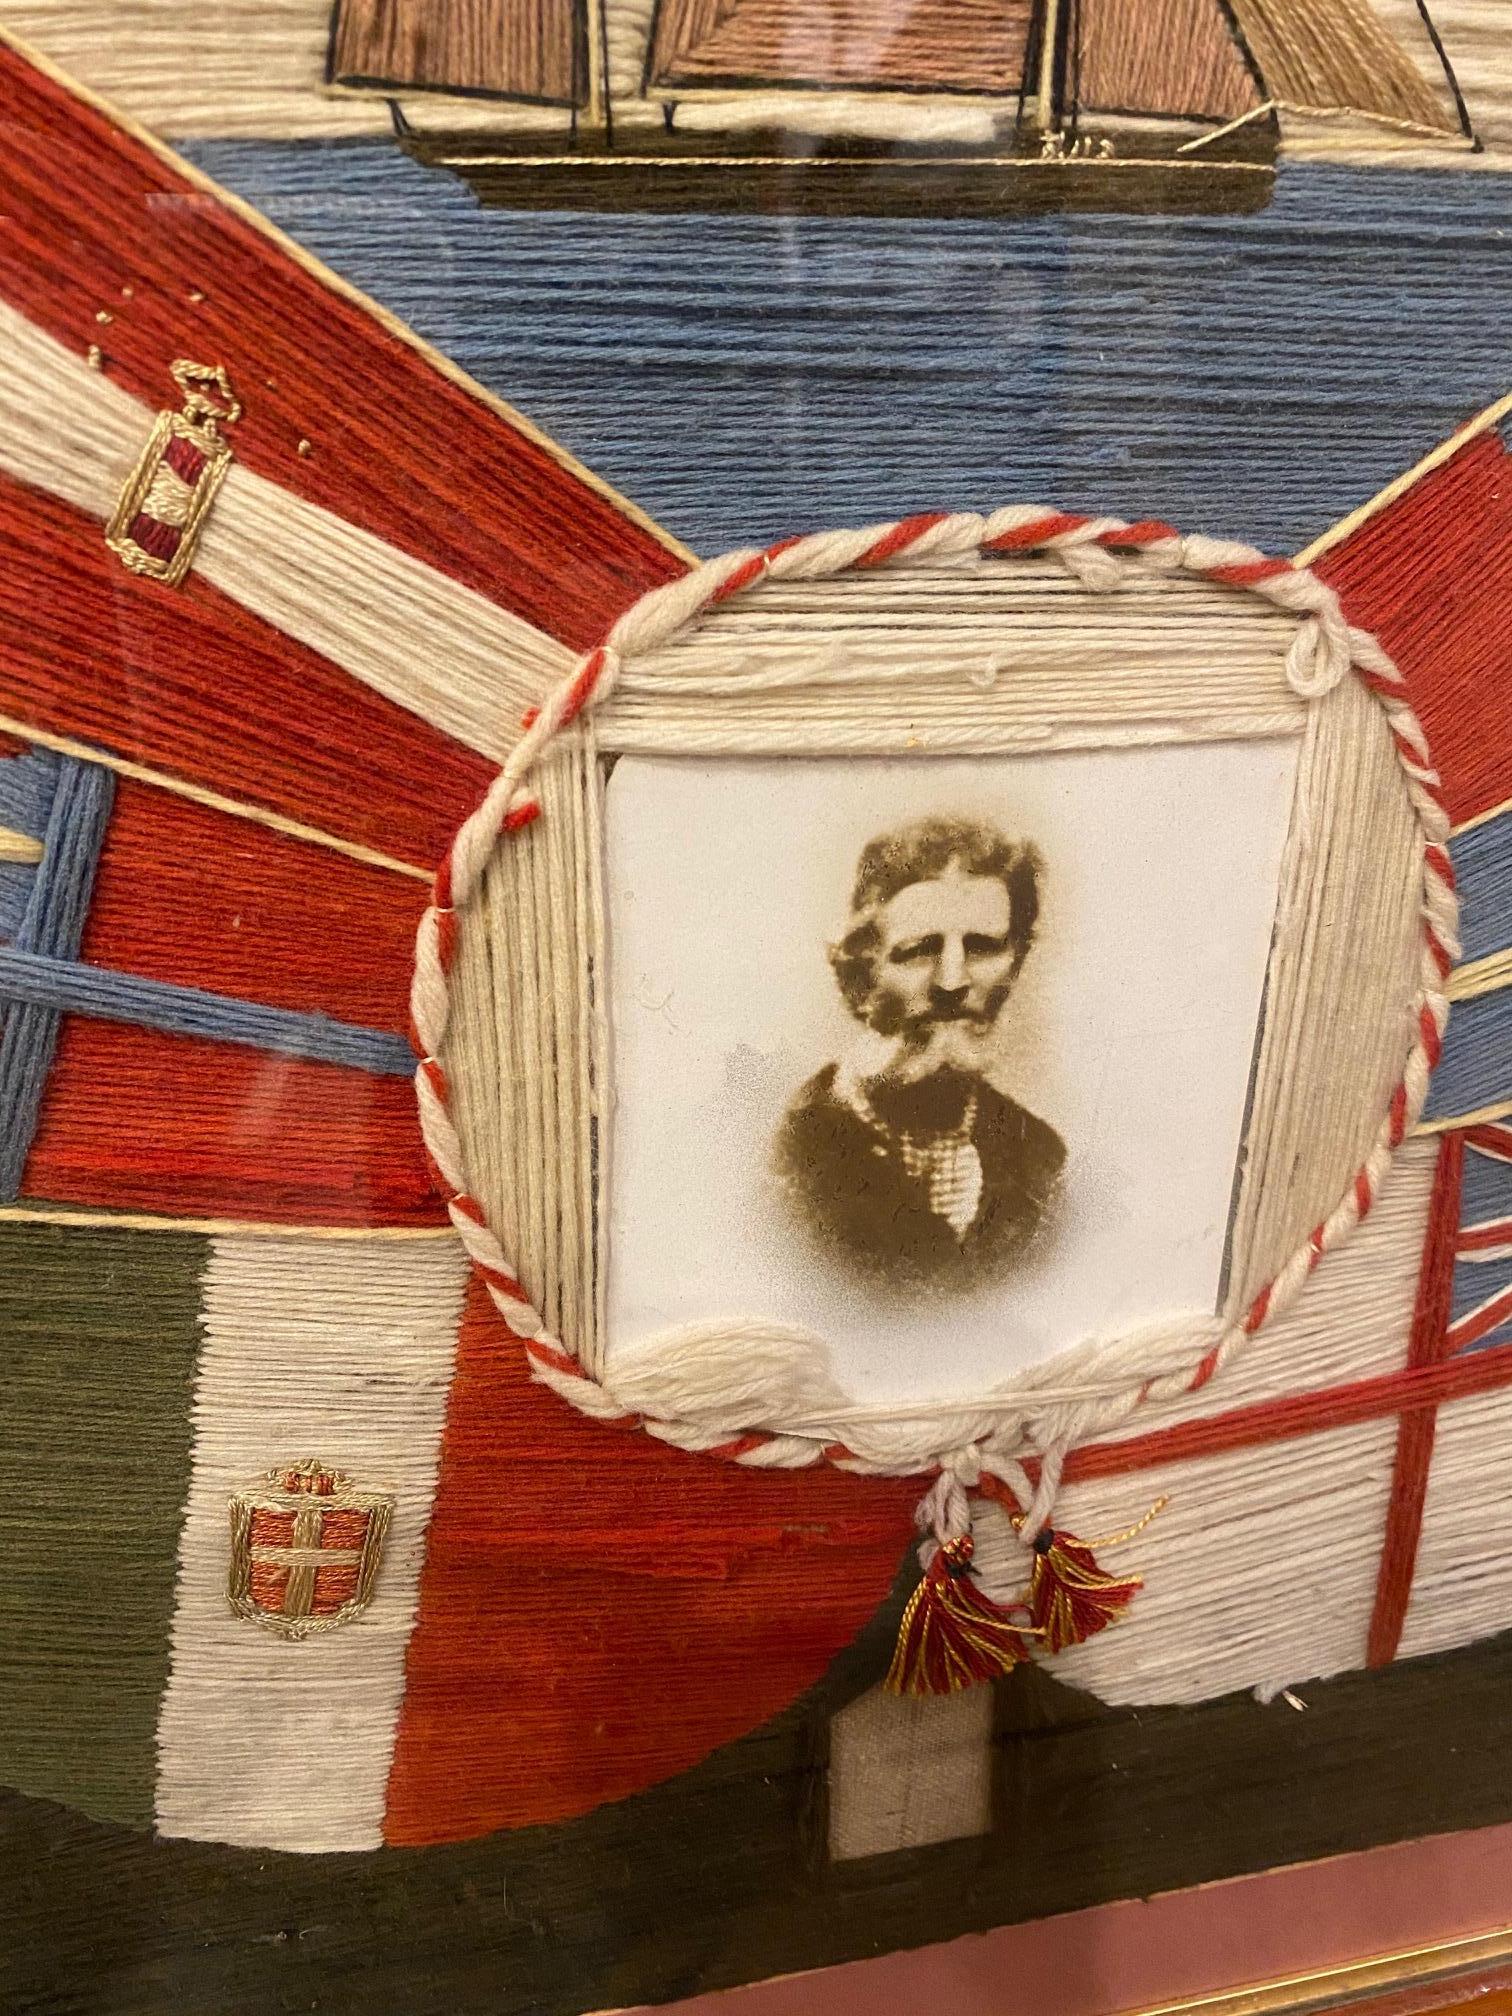 Très inhabituelle paire de lainages de marin du 19ème siècle, vers 1870, une véritable paire de lainages présentant des images miroir du même yacht gréé en Yawl, et des photographies d'époque des marins mari et femme entourés des drapeaux de toutes